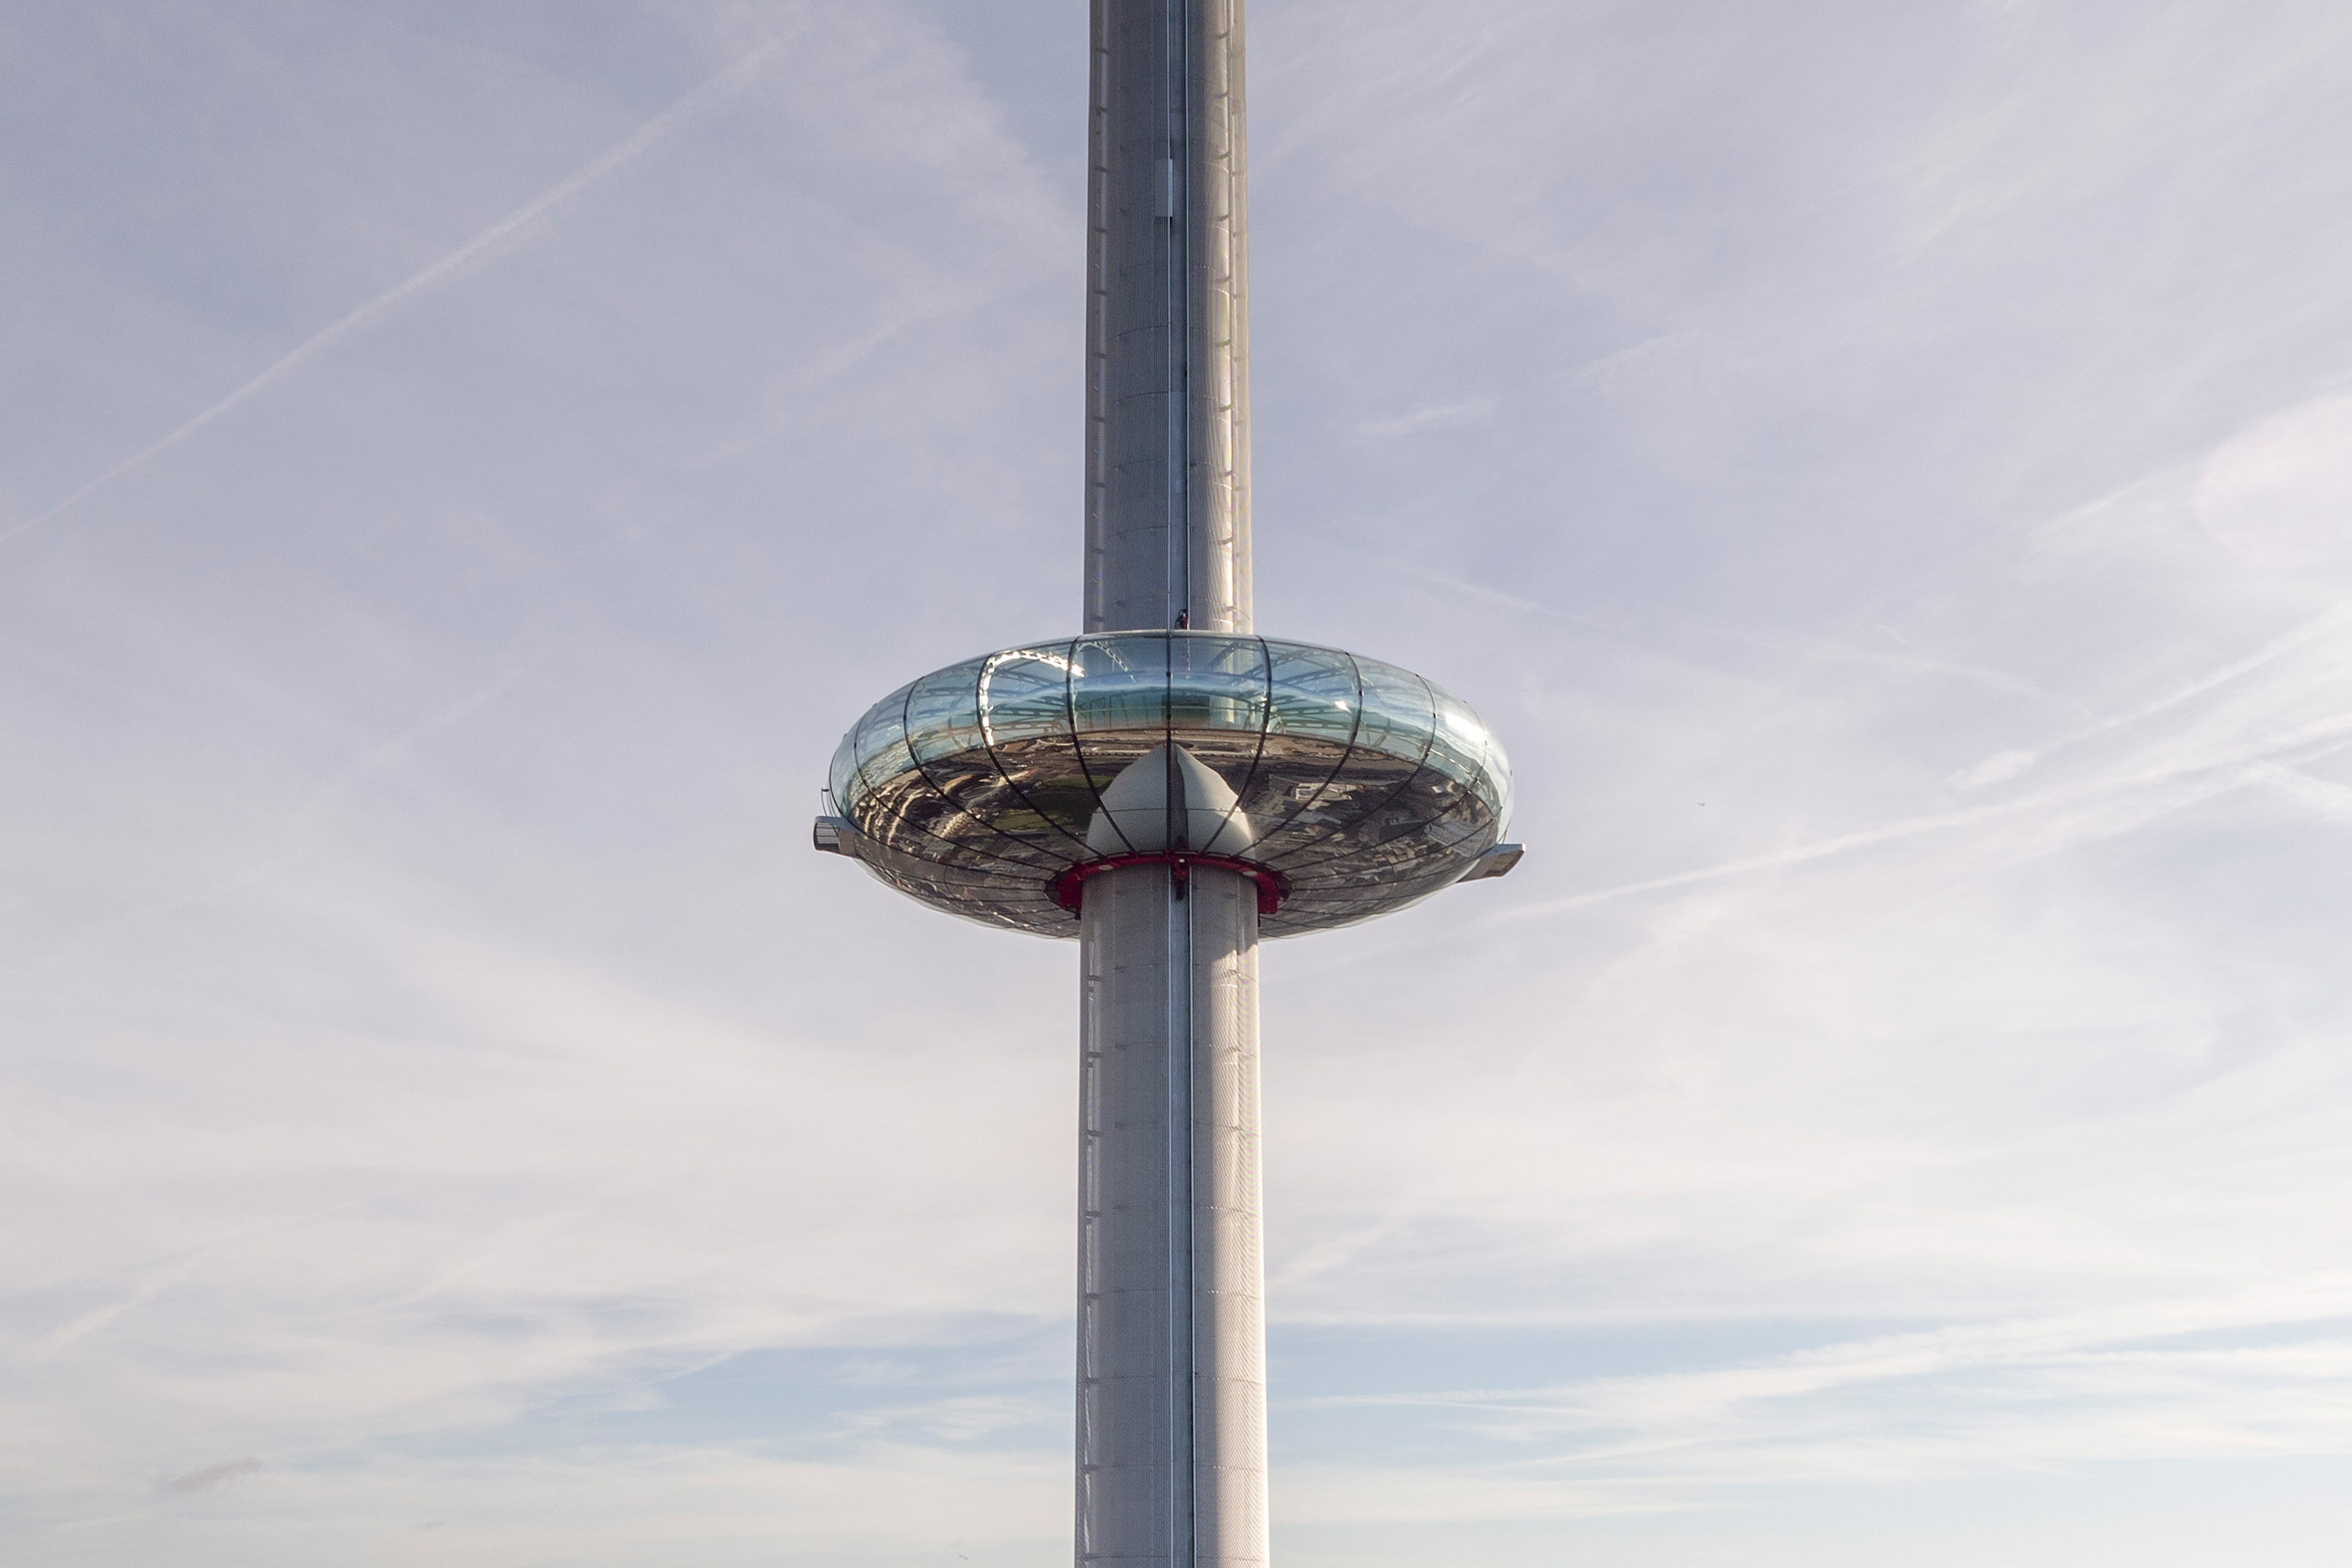 British Airways i360 observation tower